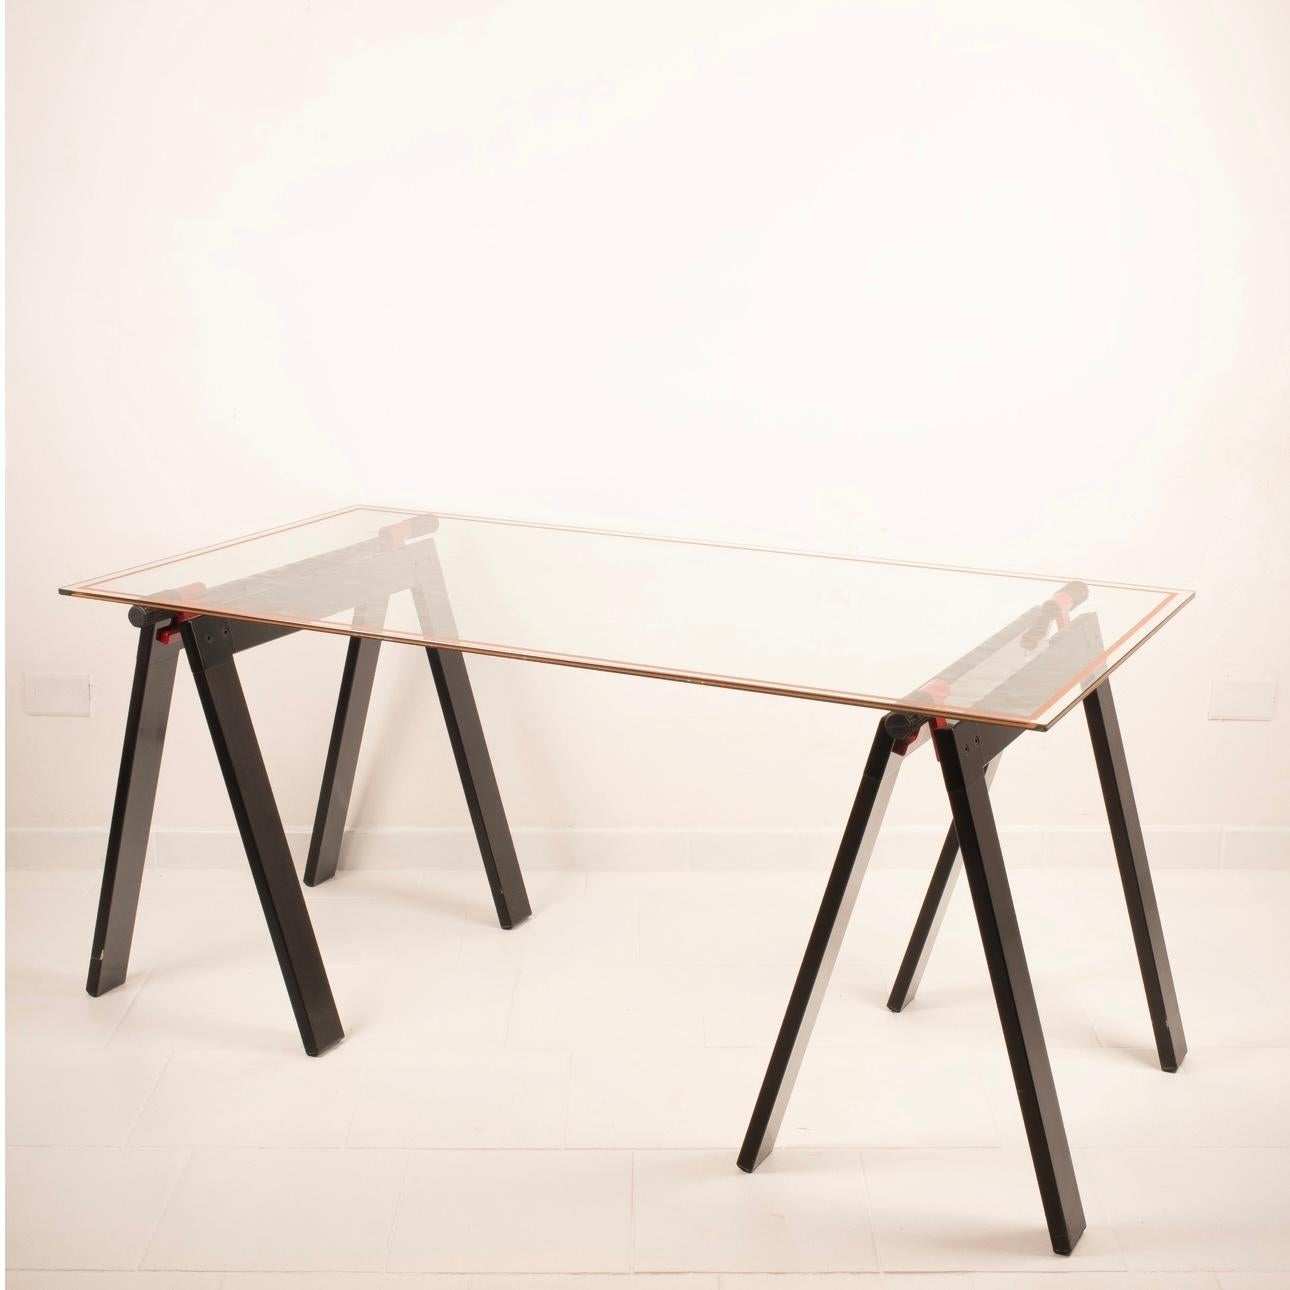 Der Tisch 'Gateano' ist ein einzigartiges Designerstück, das von dem berühmten Designer Gae Aulenti entworfen und von Zanotta in den 1970er Jahren hergestellt wurde.
Dieses elegante Möbelstück verbindet Form und Funktion auf überraschende Weise und